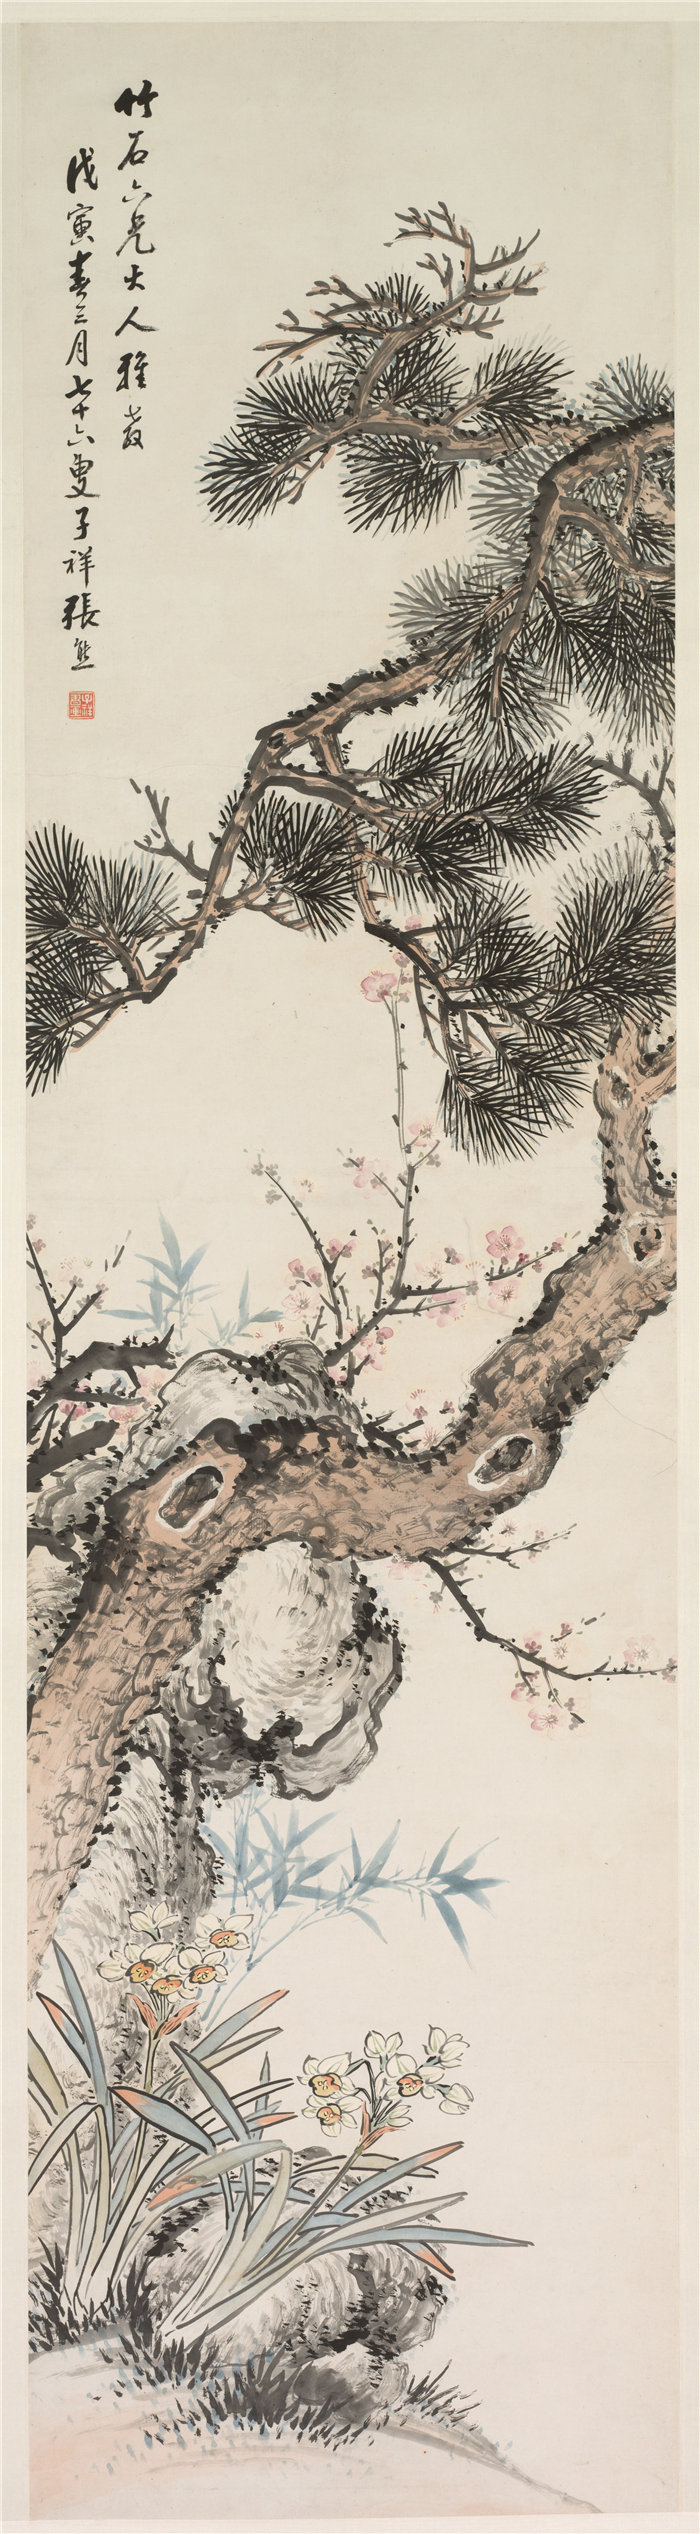 中国清朝画家张熊-《松树》 高清国画作品